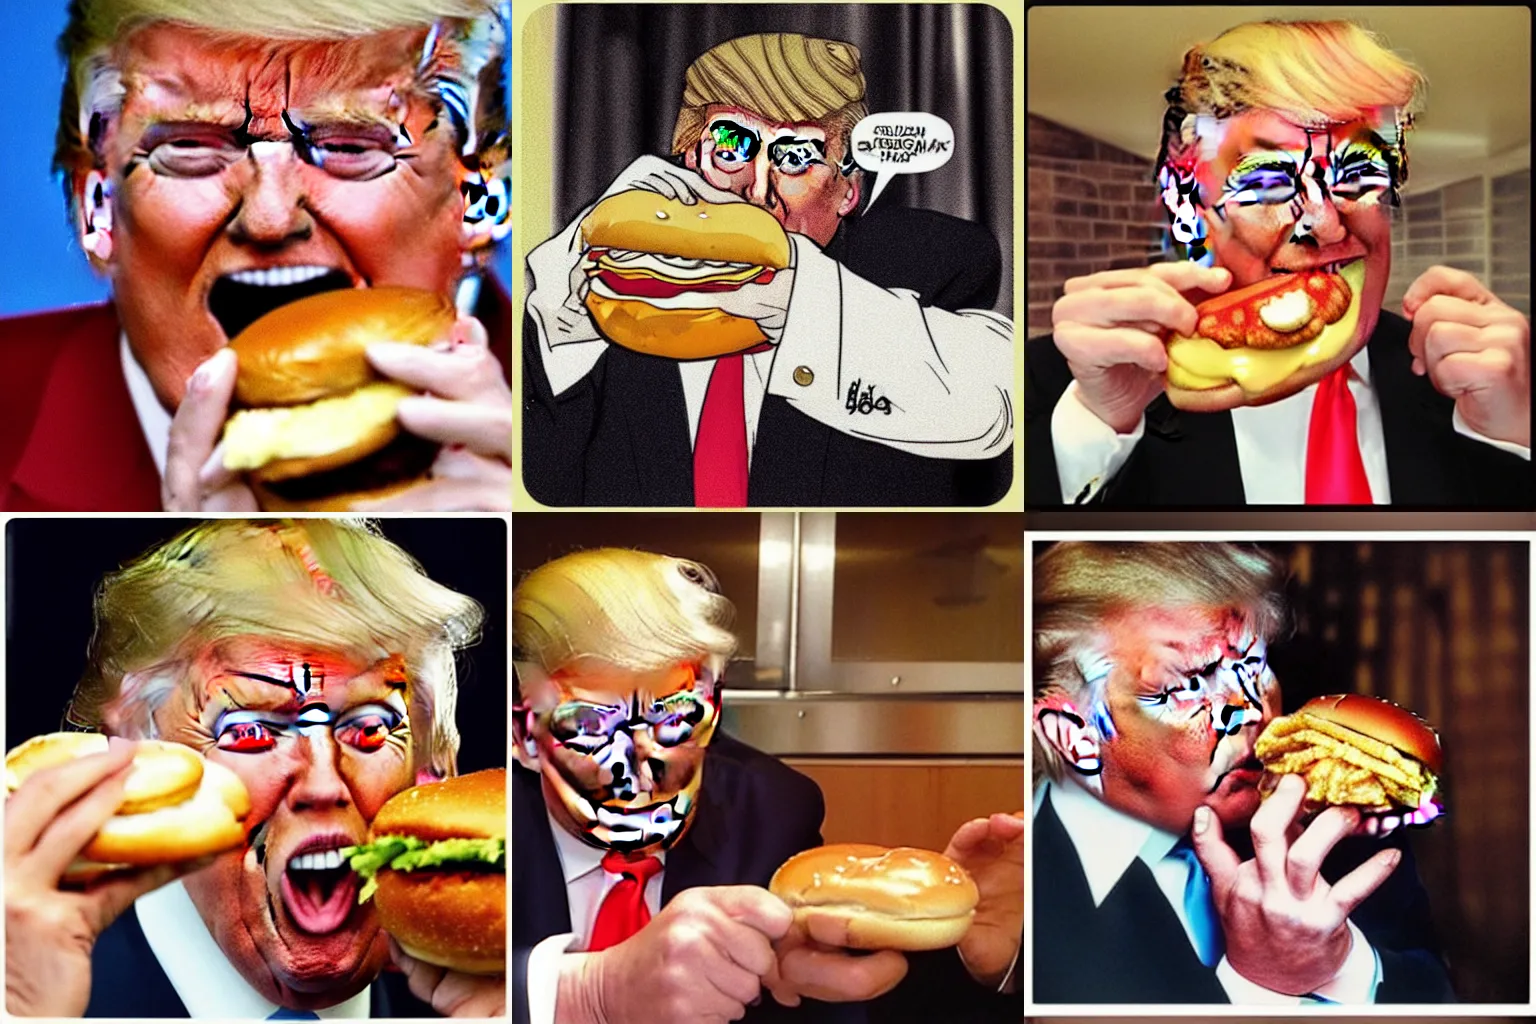 Prompt: “Donald trump lovingly licking a hamburger.”